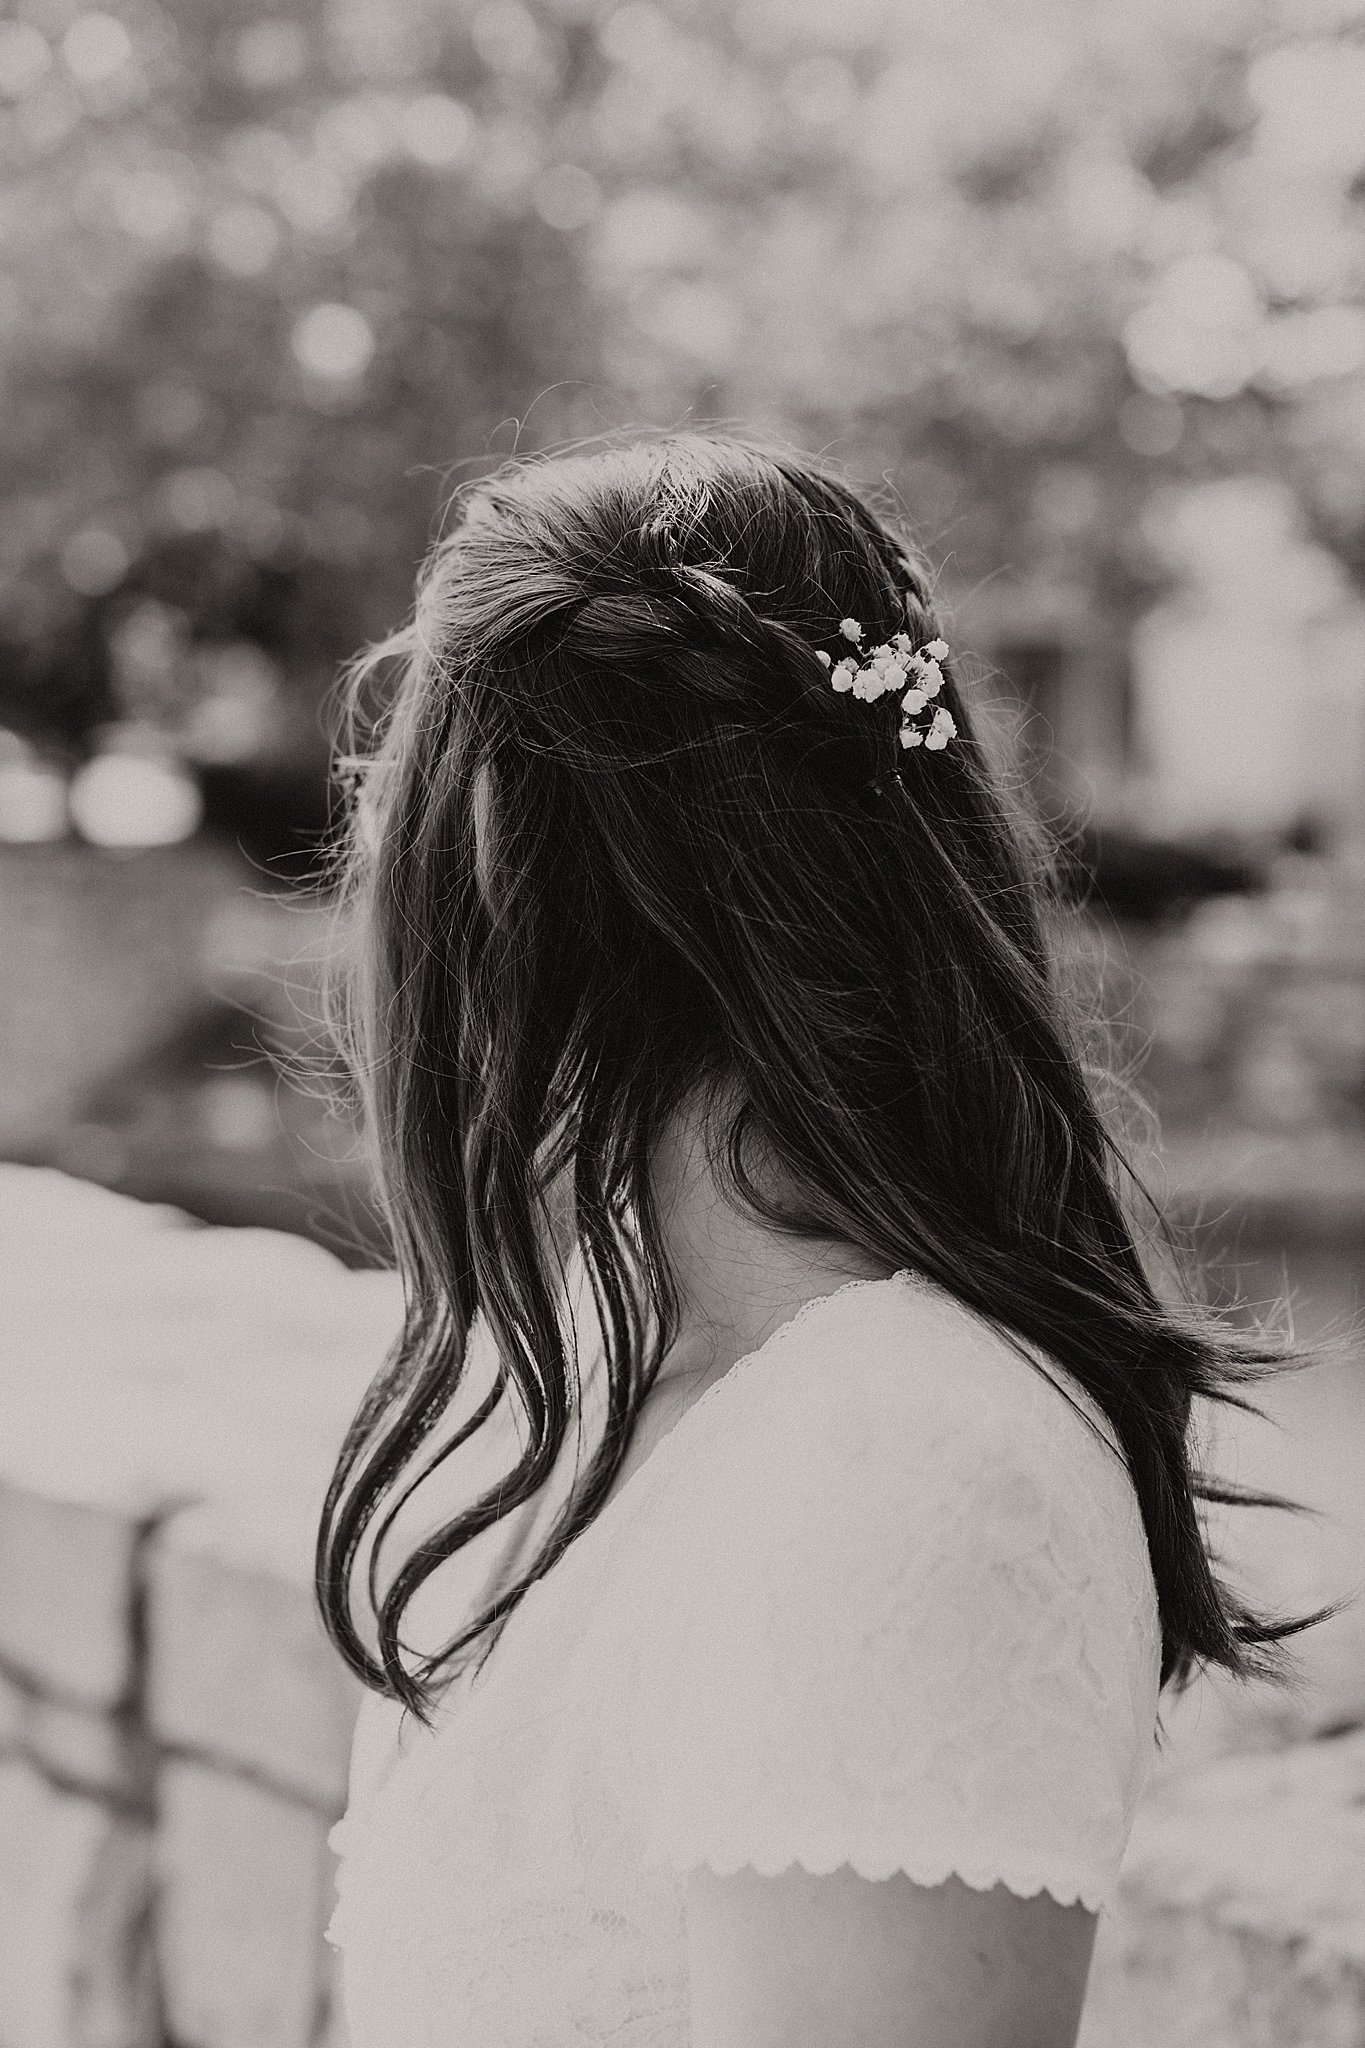 Flowers in bride's hair